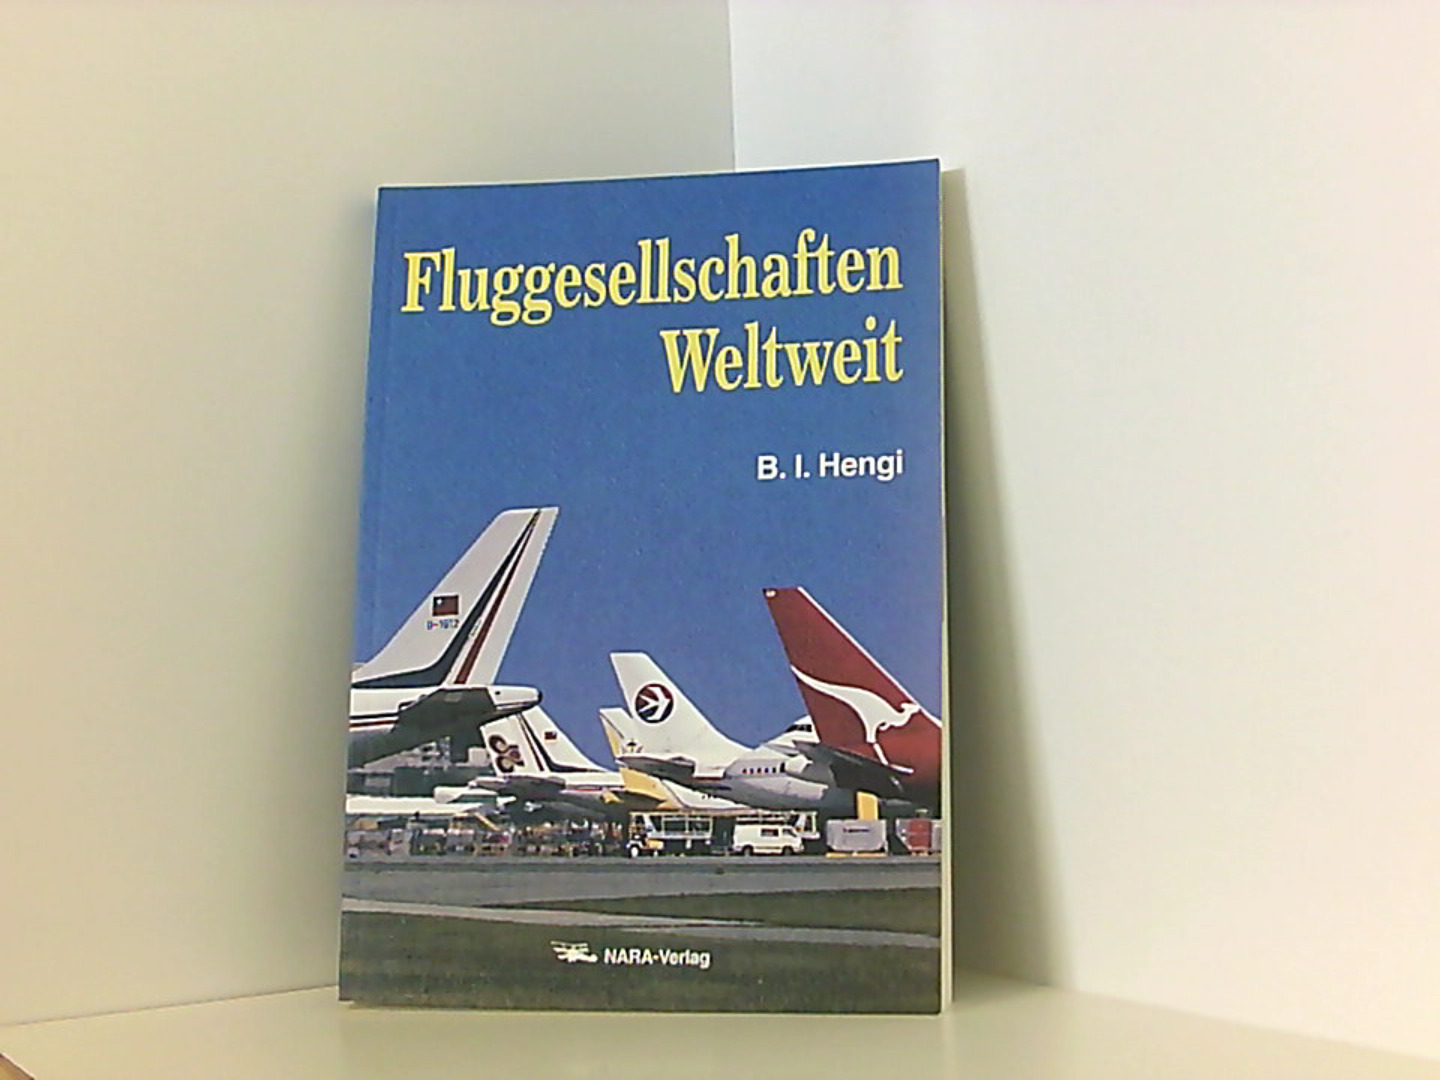 Fluggesellschaften Weltweit ISBN 3925671110